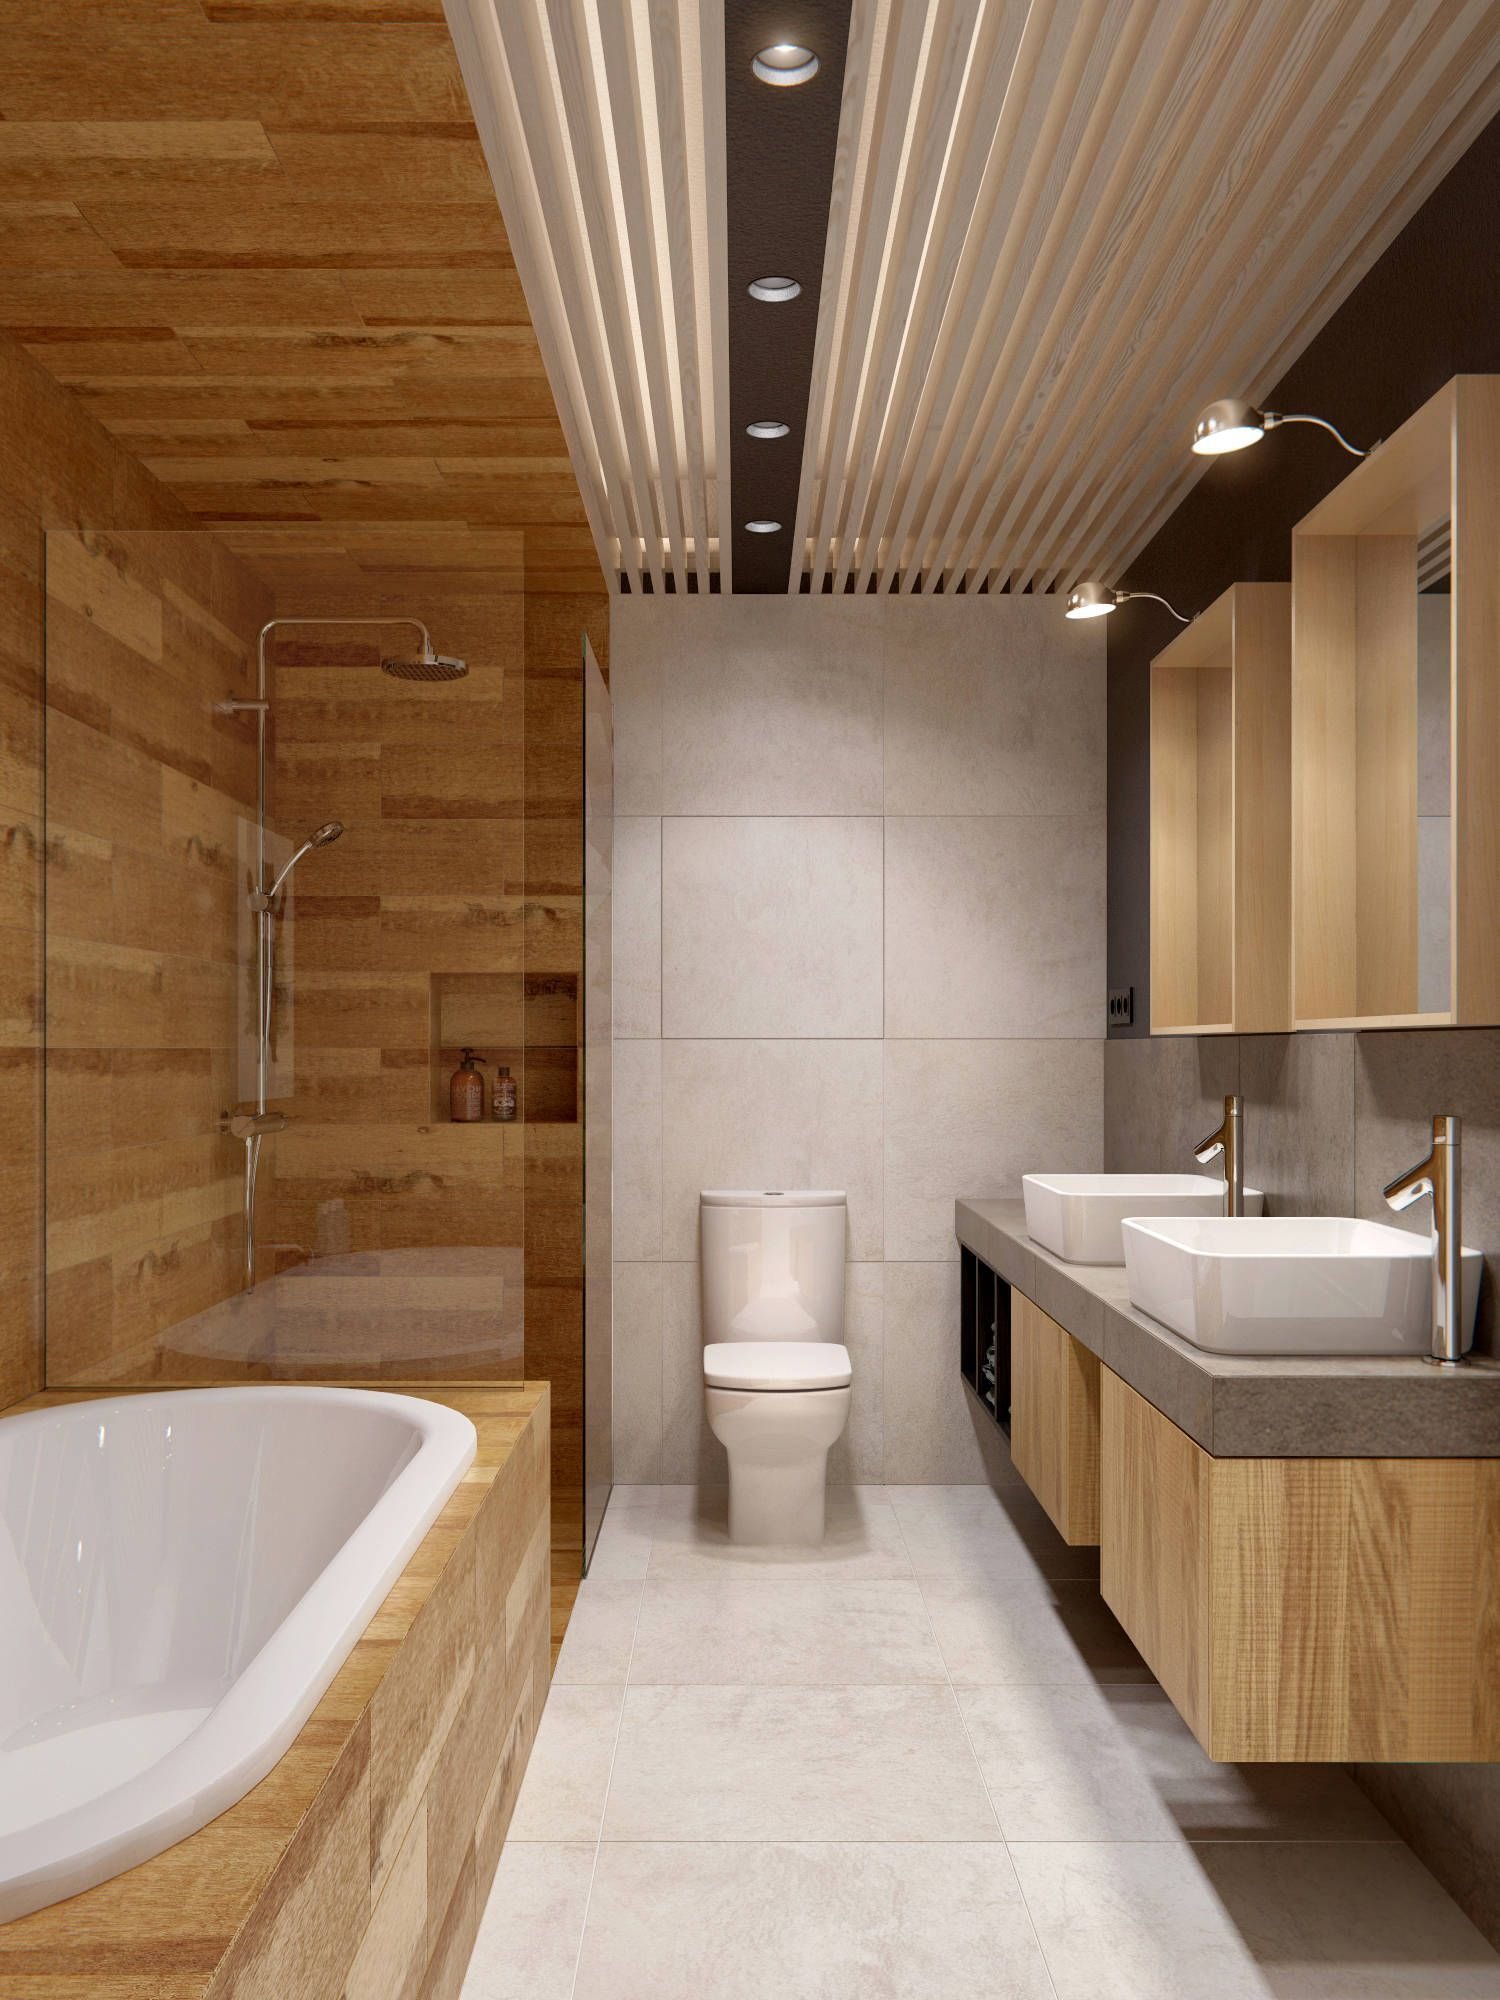 Потолок плитка в ванной комнате. Ванная с деревянной отделкой. Ванная отделанная деревом. Ванная комната с деревянной отделкой. Ванная комната плитка под дерево.